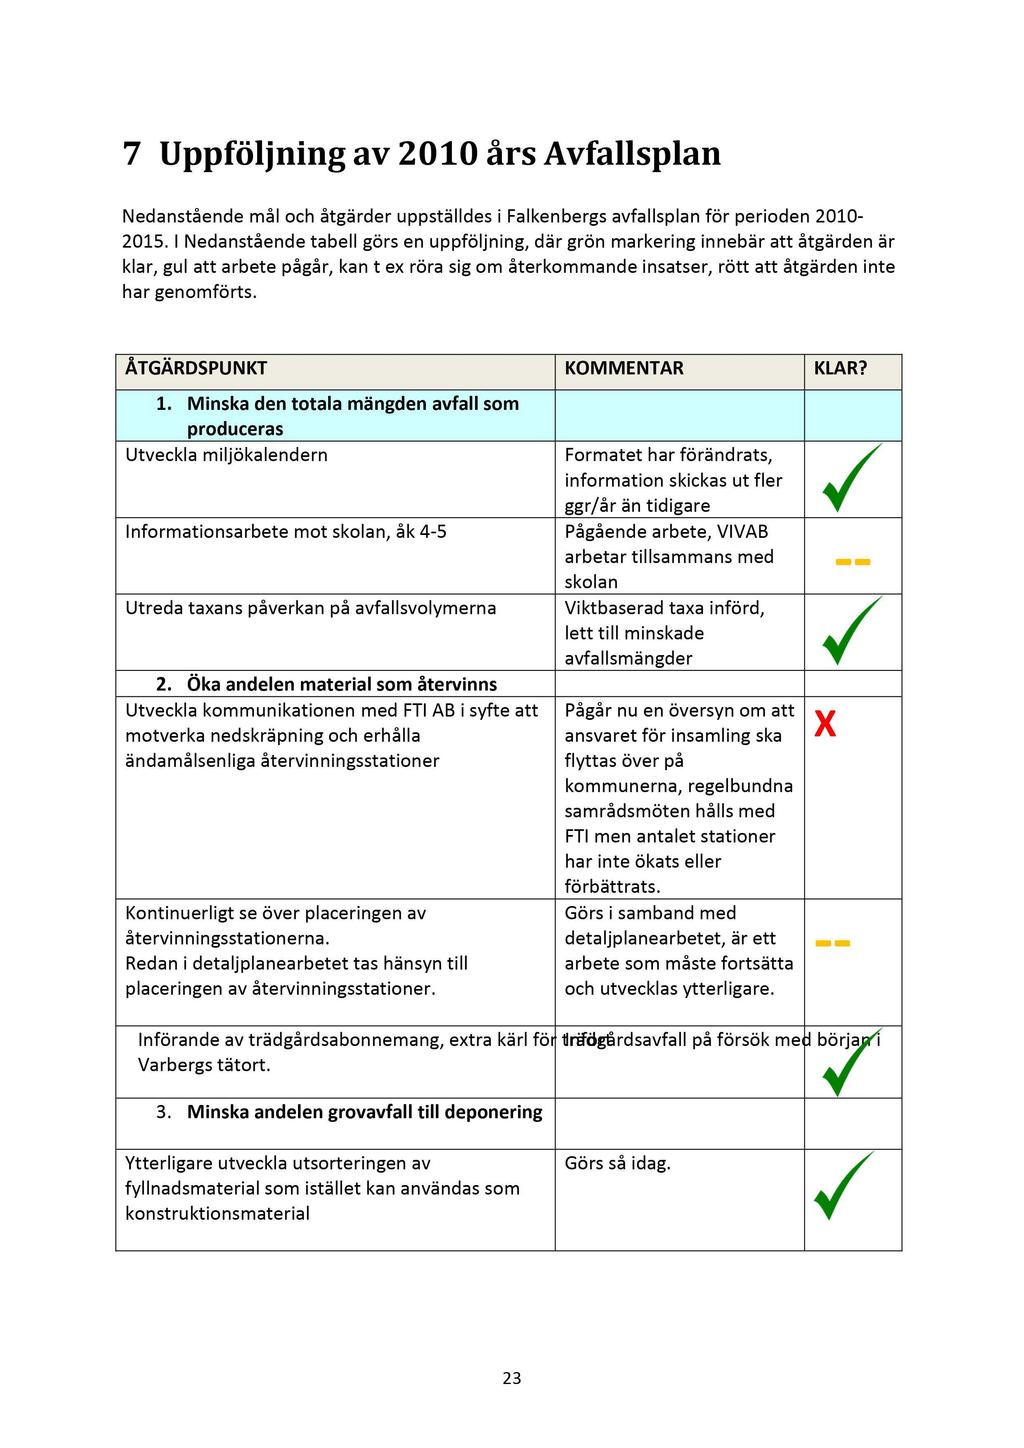 7 Uppföljning av 2010 års Avfallsplan Nedanstående mål och åtgärder uppställdes i Falkenbergs avfallsplan för perioden 2010-2015.